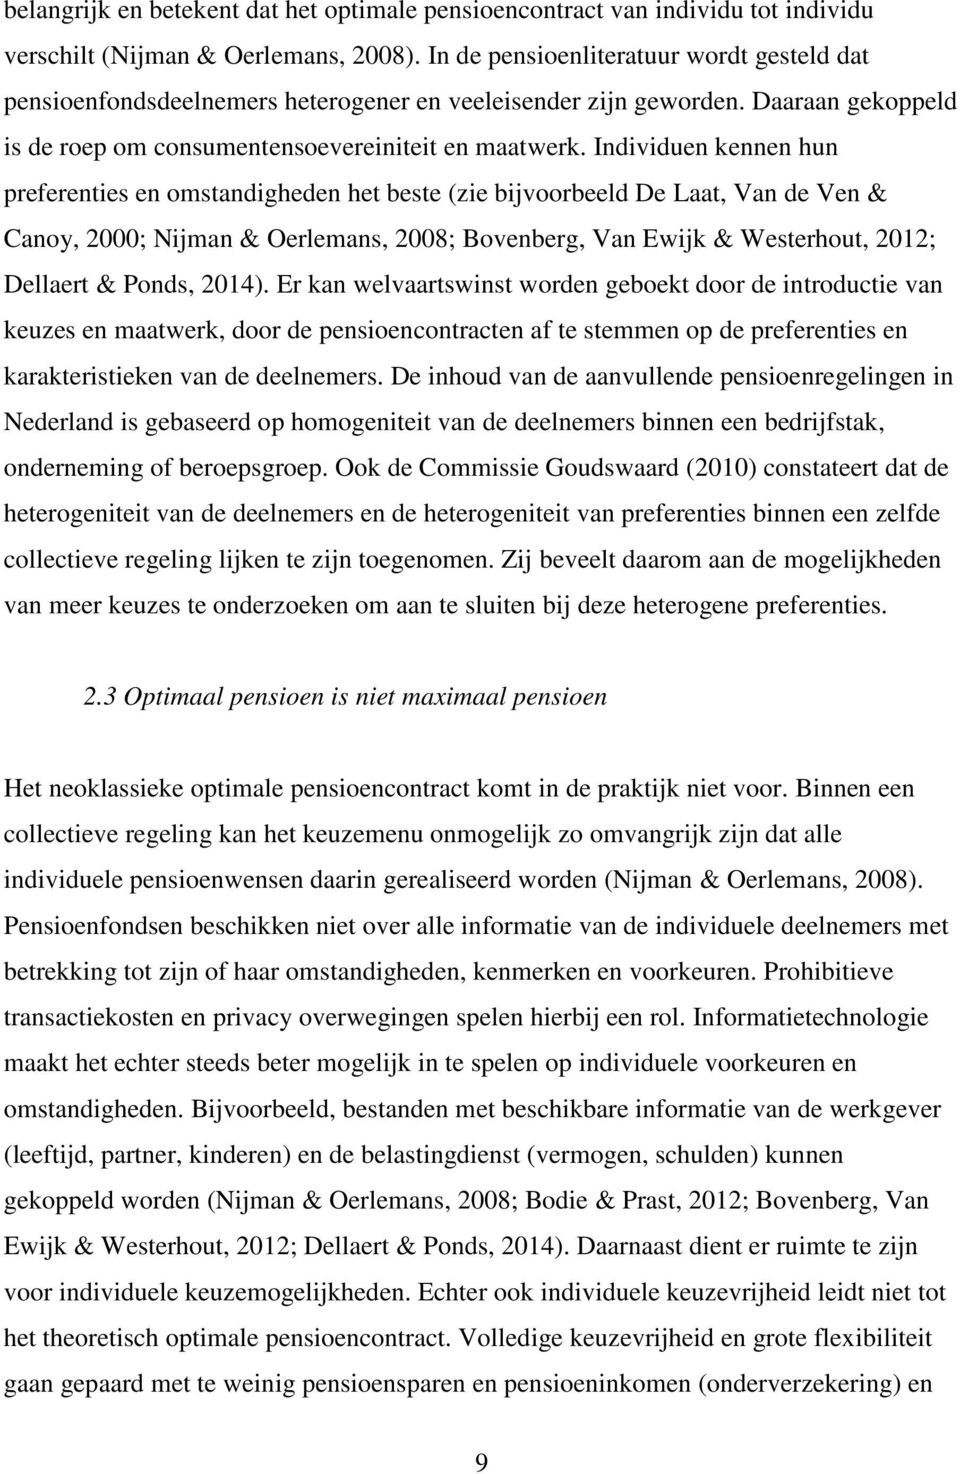 Individuen kennen hun preferenties en omstandigheden het beste (zie bijvoorbeeld De Laat, Van de Ven & Canoy, 2000; Nijman & Oerlemans, 2008; Bovenberg, Van Ewijk & Westerhout, 2012; Dellaert &